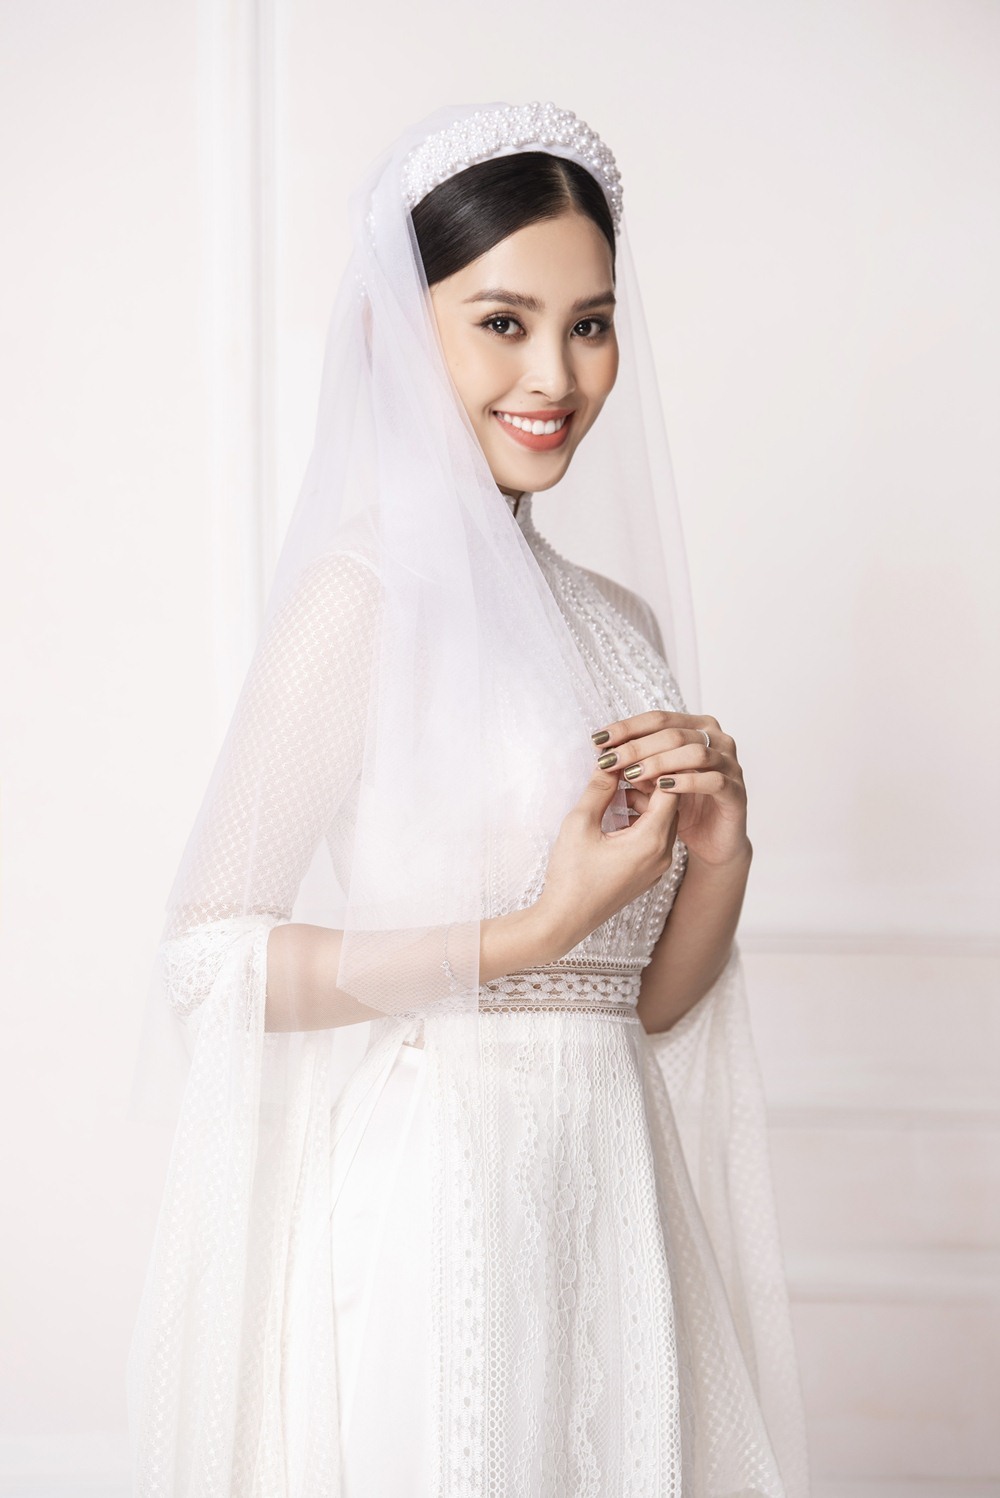 Hoa hậu Tiểu Vy hóa cô dâu e ấp với áo dài